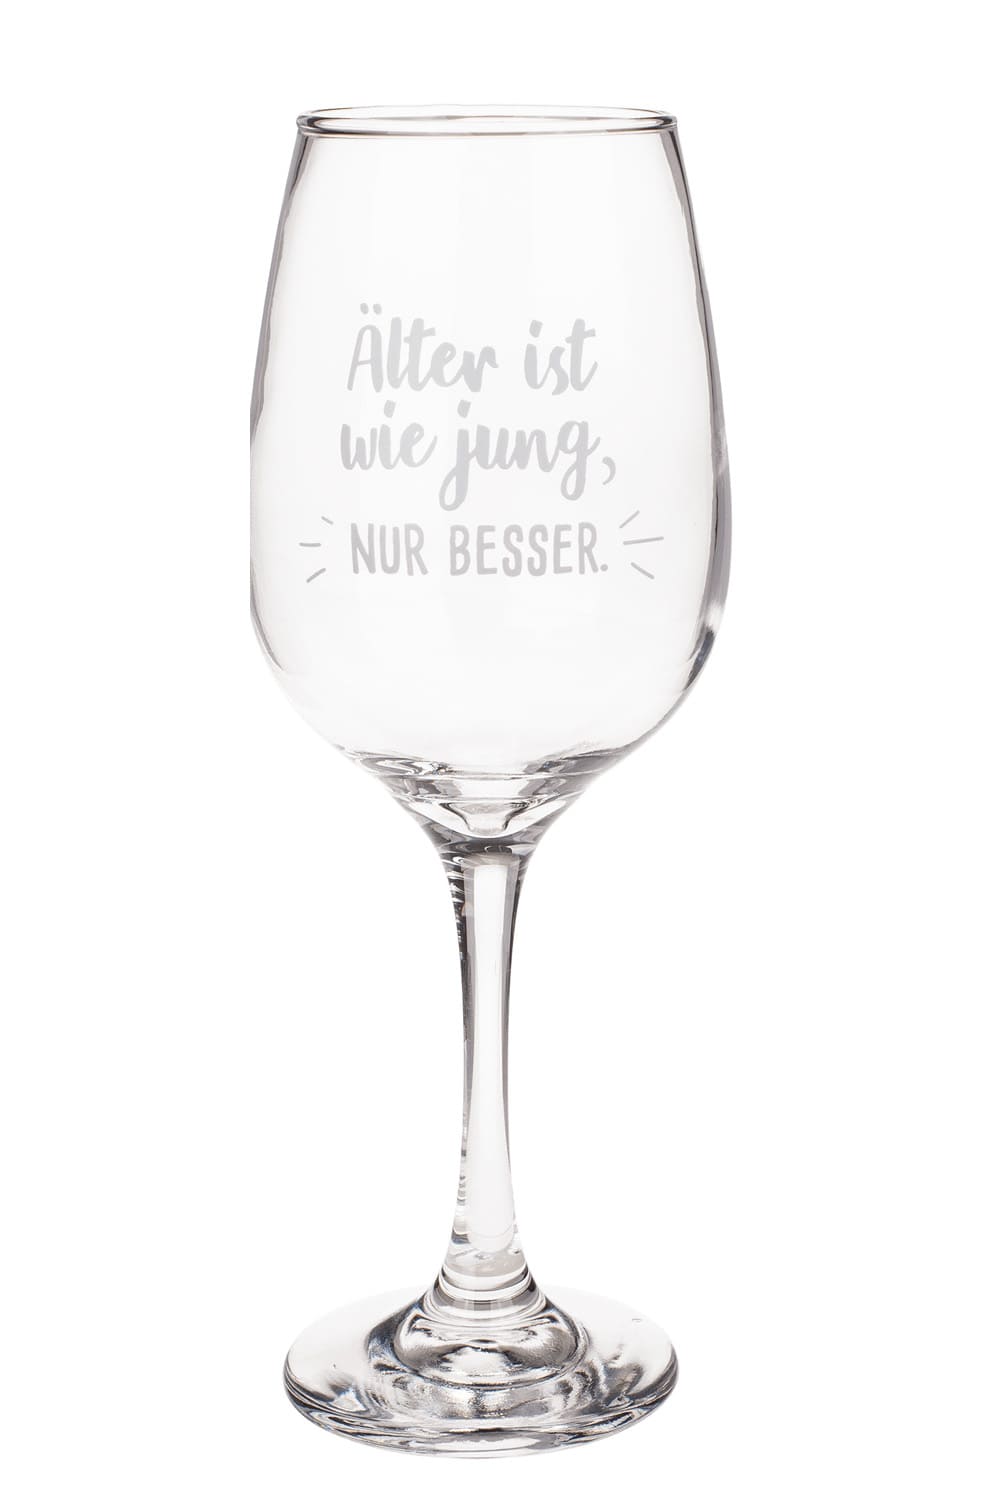 Das Weinglas ist bedruckt mit dem Spruch: Aelter ist wie jung, nur besser. Das schoene Weinglas kann beliebig mit anderen Geschenken kombiniert werden. Als kreative Geschenkidee koennte man zum Beispiel eine Weinflasche dazuschenken. Einfach ein kreatives Geschenk zum Geburtstag oder zur Pension. 